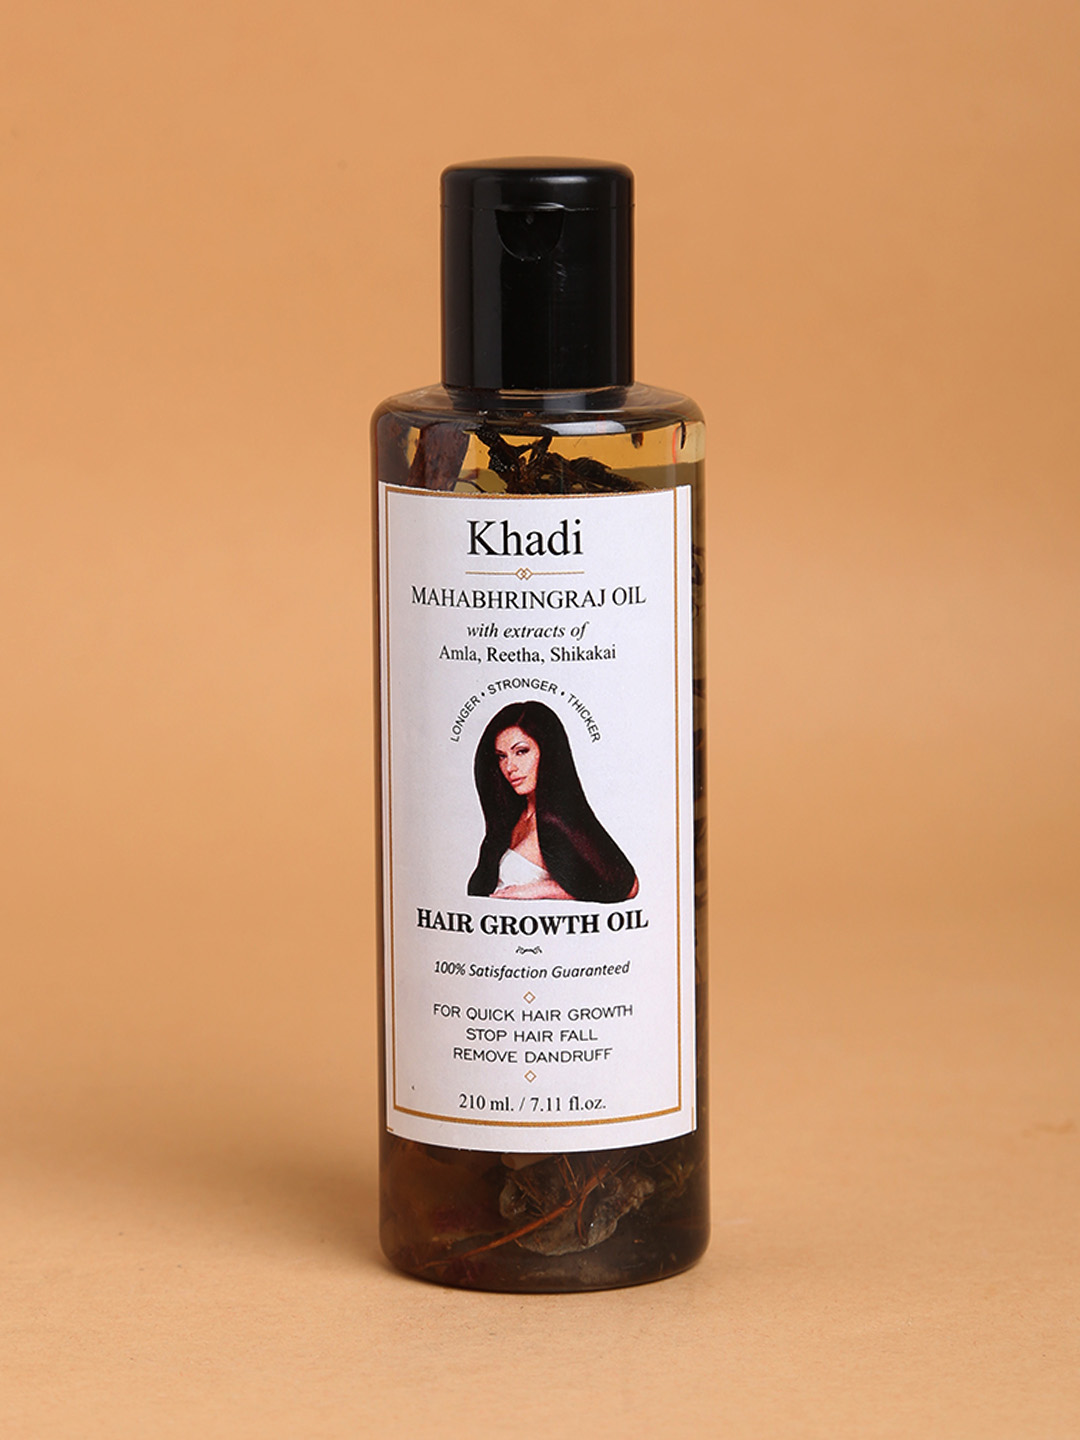 Vagad's Khadi Onion Hair Oil for Hair Growth and Hair Fall Control  100ml | eBay